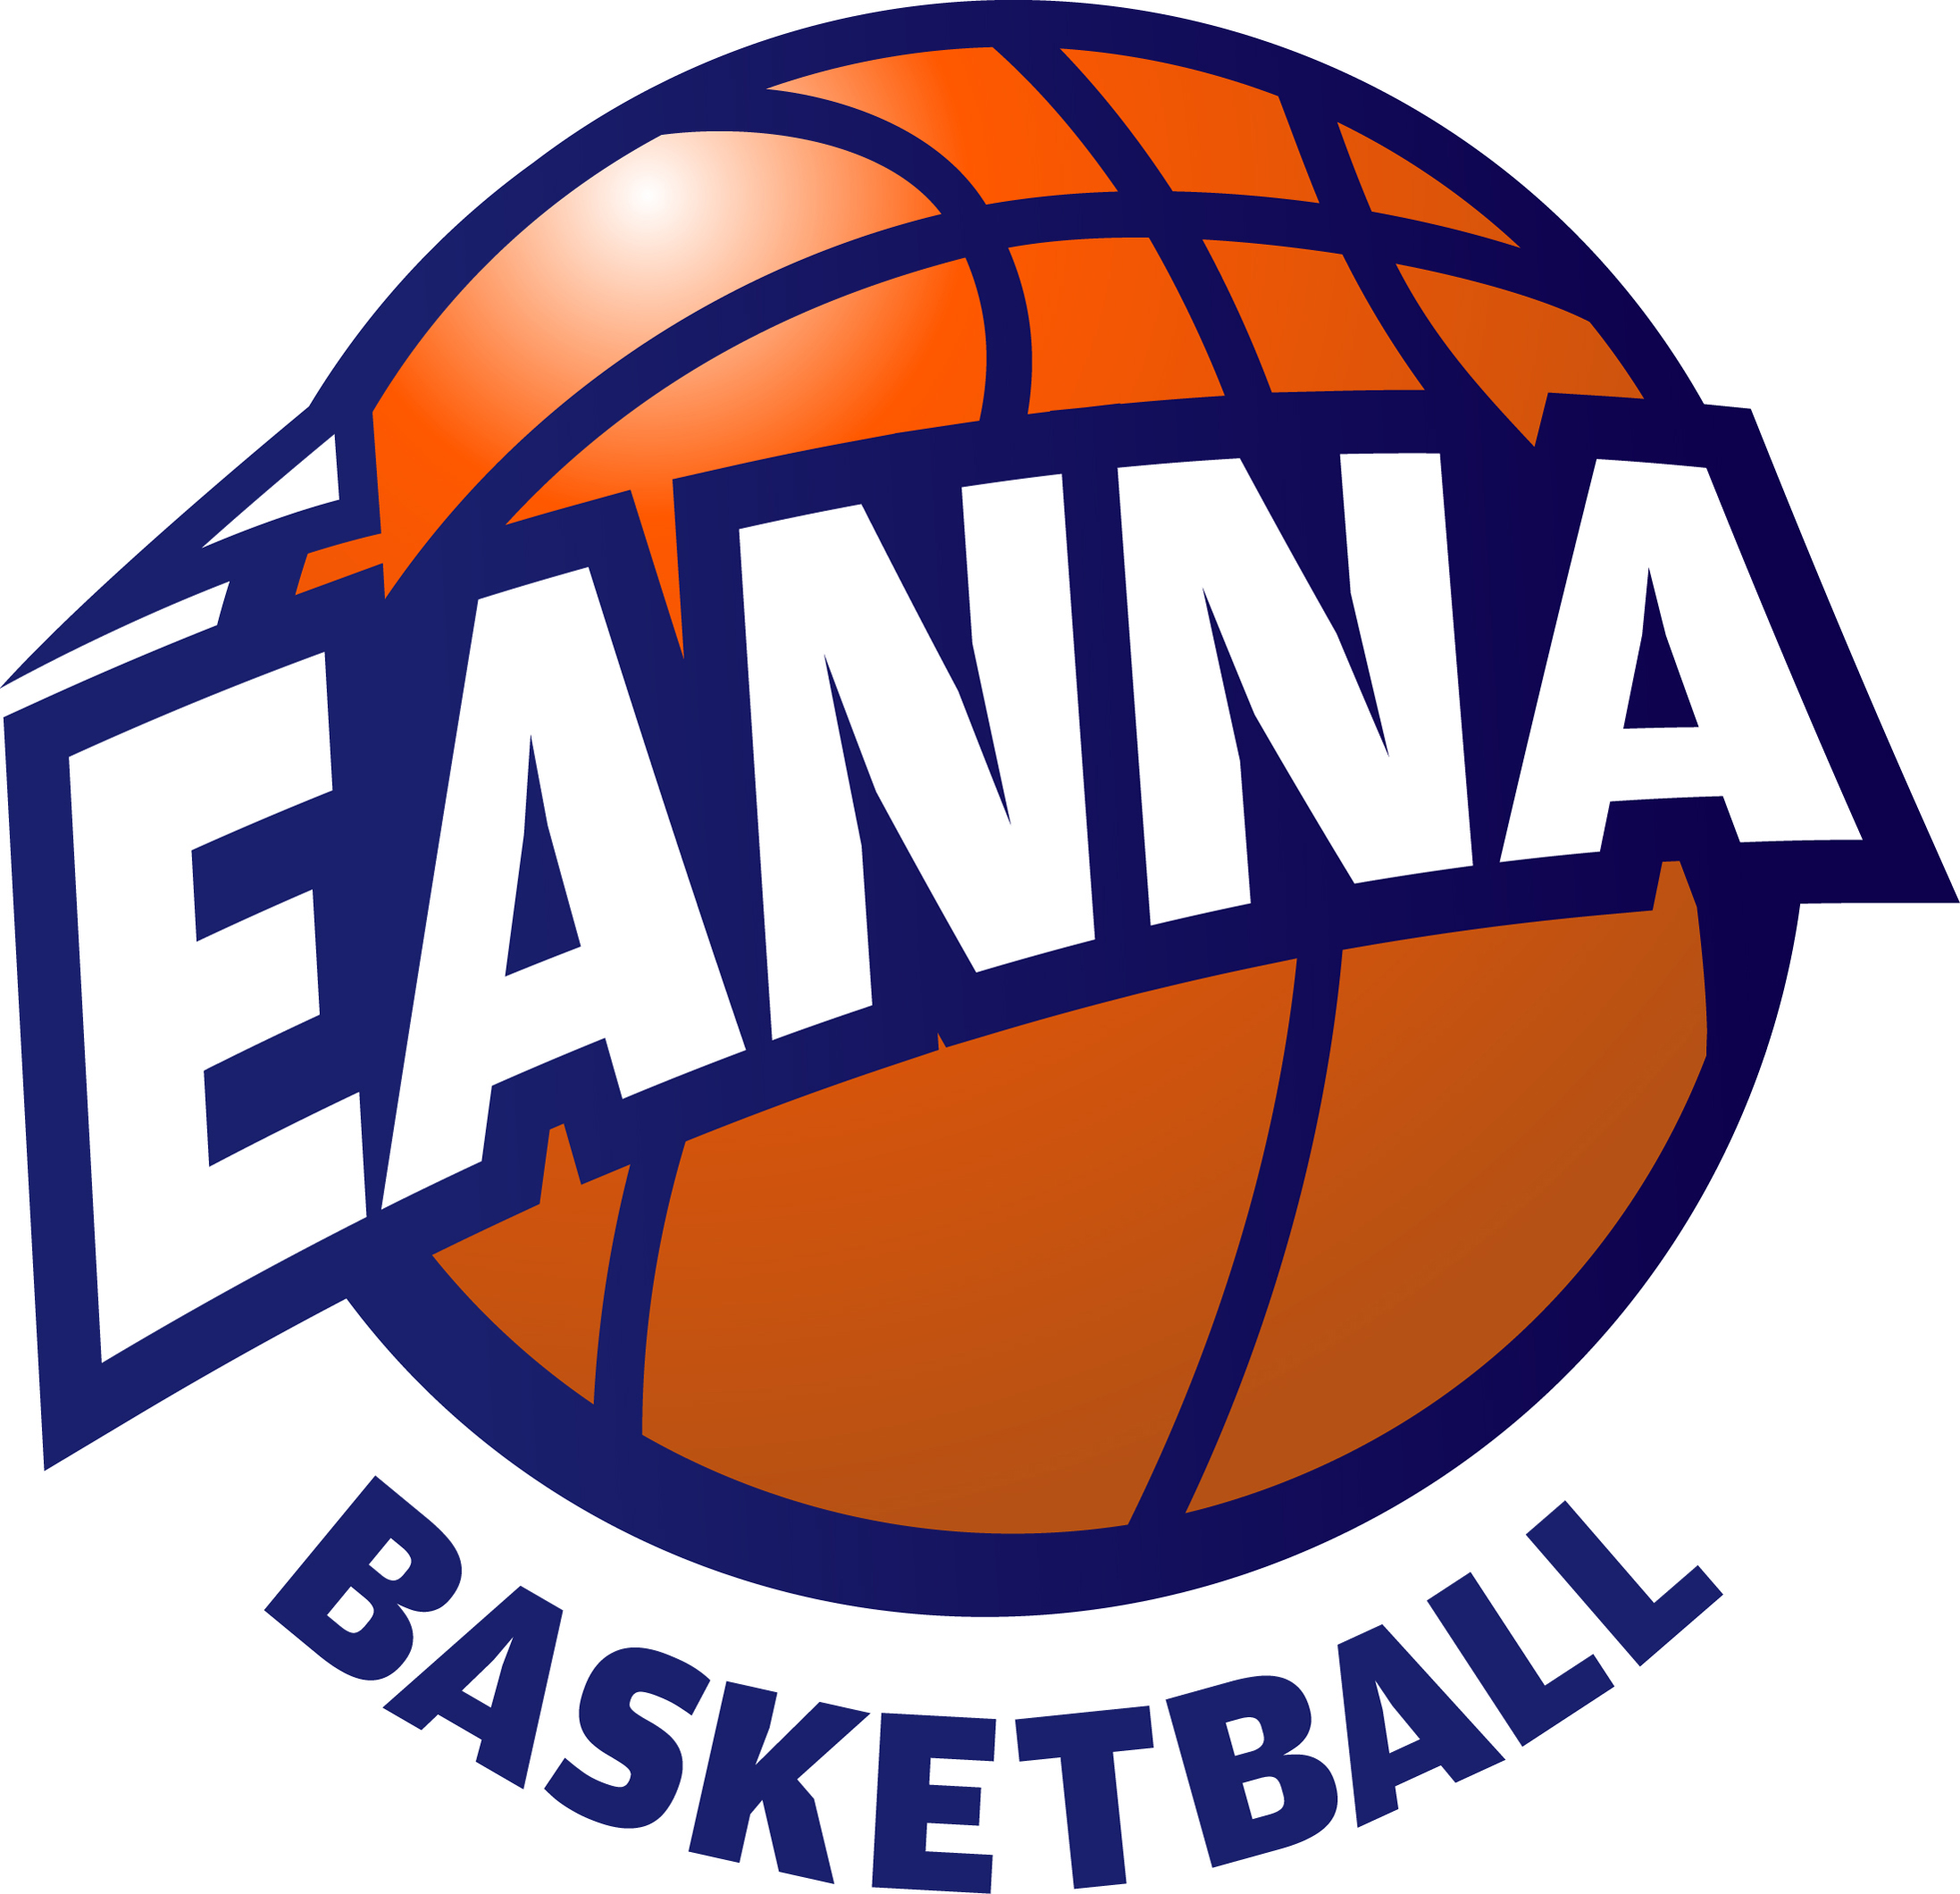 Eanna Basketball Club